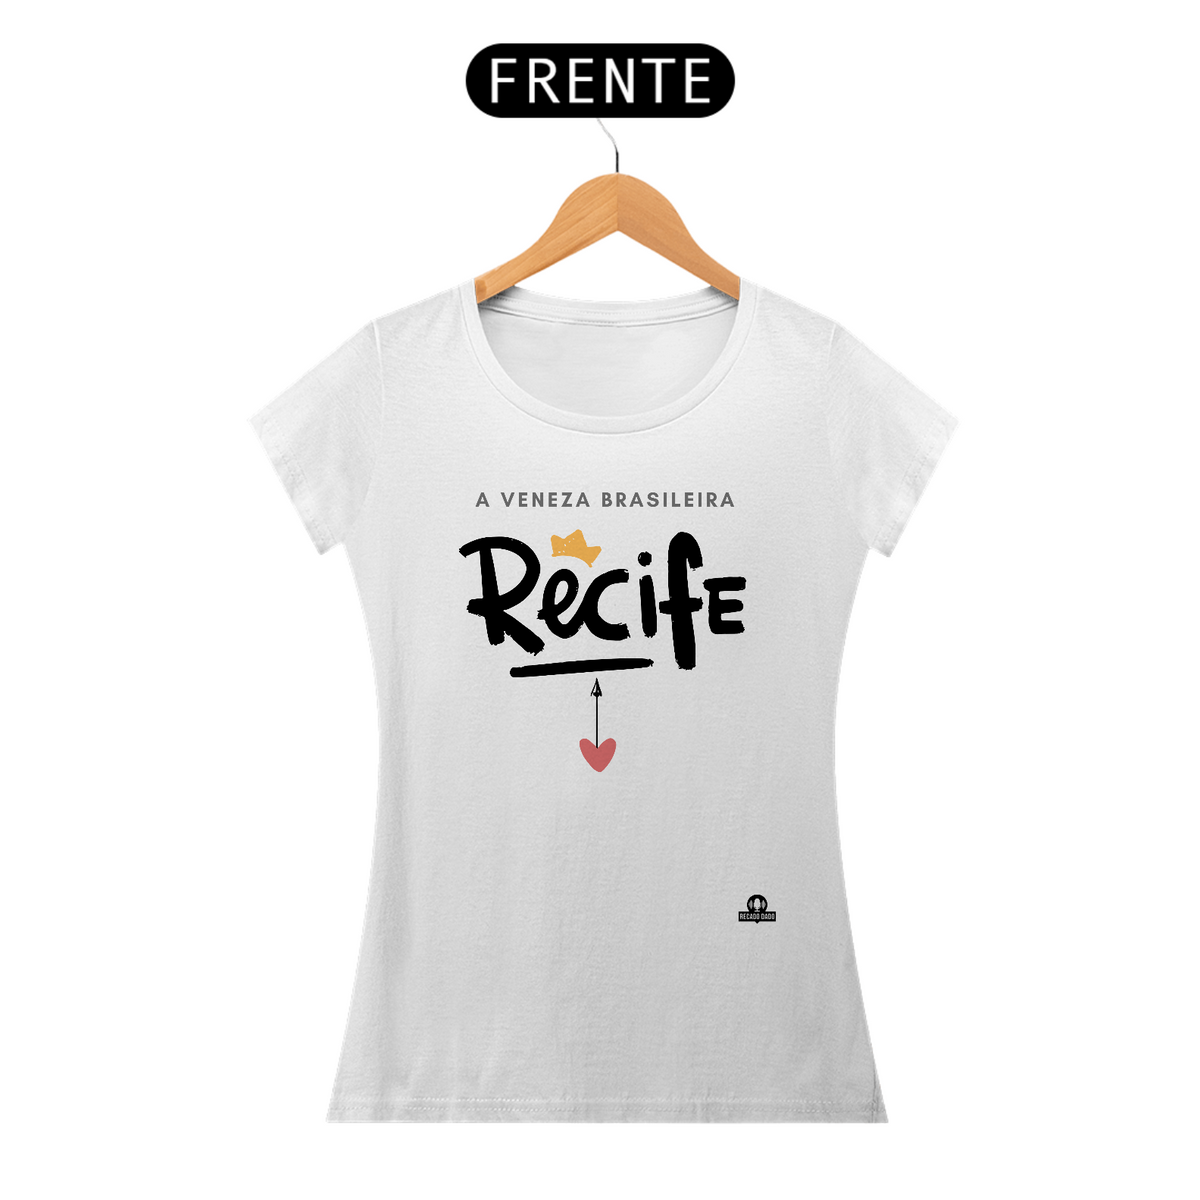 Nome do produto: Camiseta feminina de Recife, a Veneza brasileira.